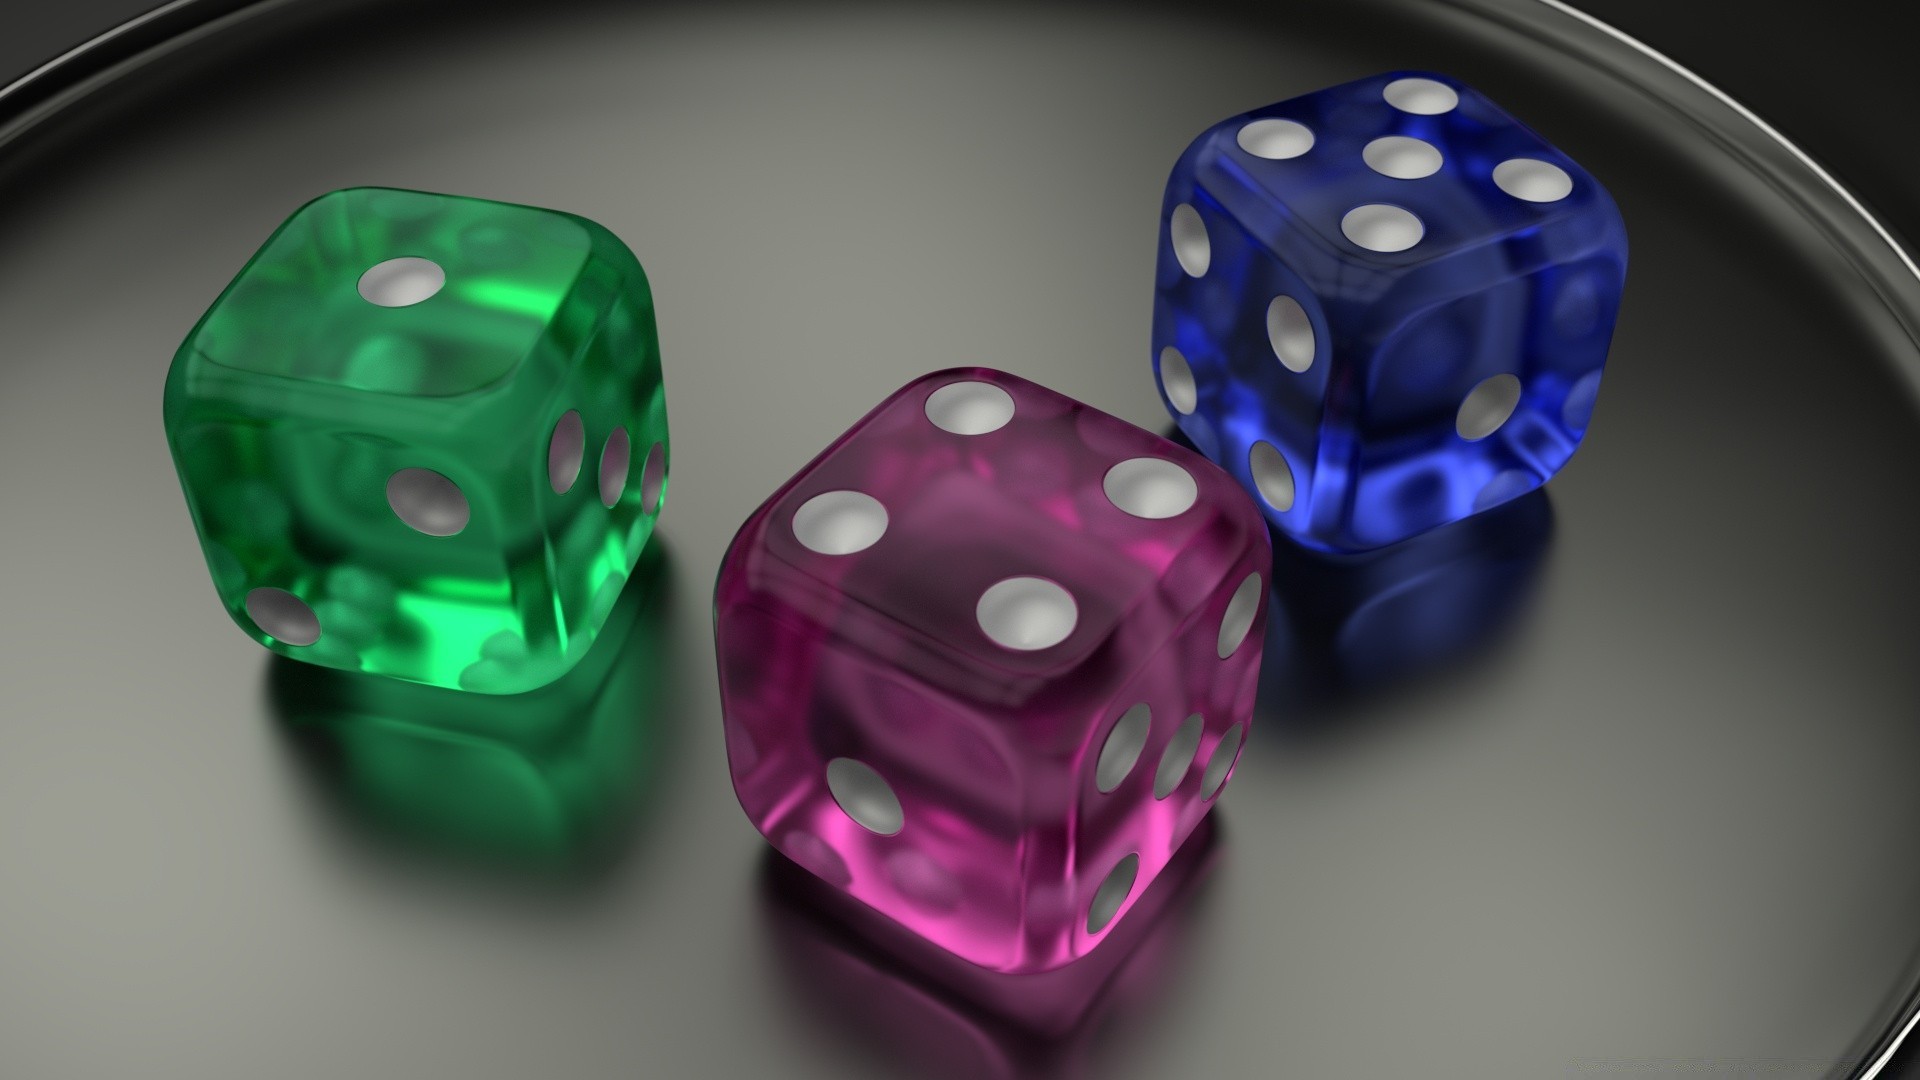 3d графика кости казино азартные игры шанс удачи крэпс риск умереть игры куб отдых цвет покер играть удовольствие яркий